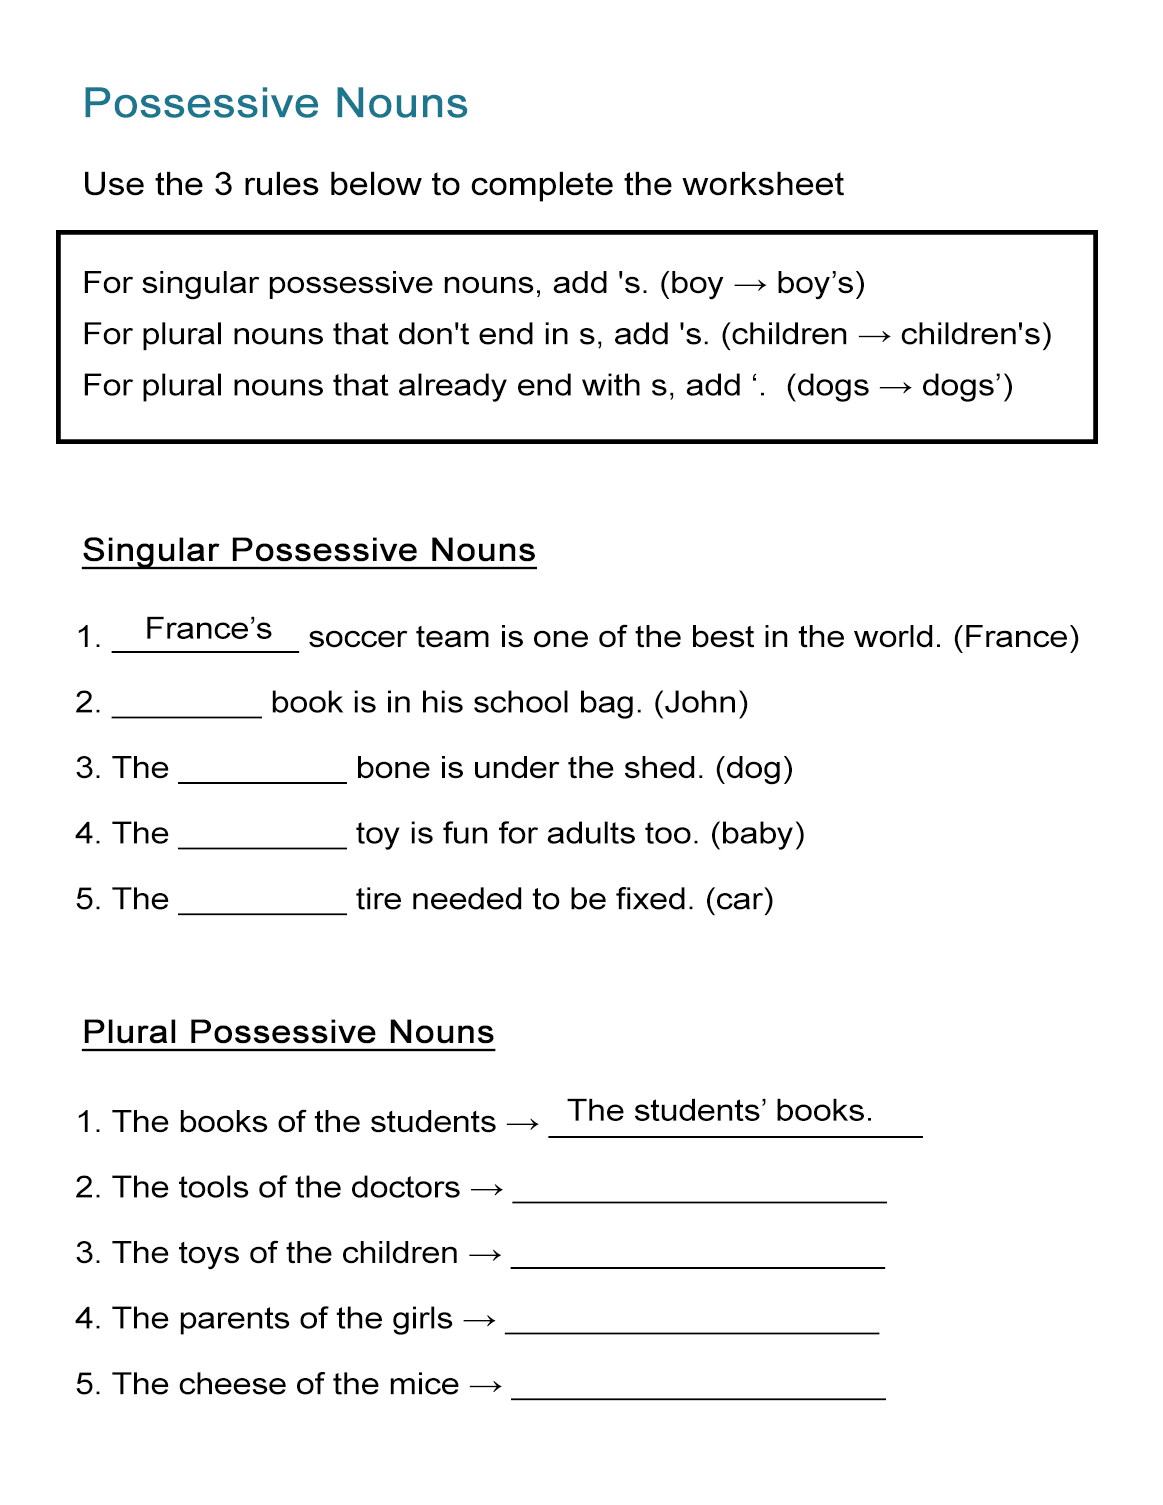 Possessive Nouns Worksheet: Singular and Plural Nouns - ALL ESL